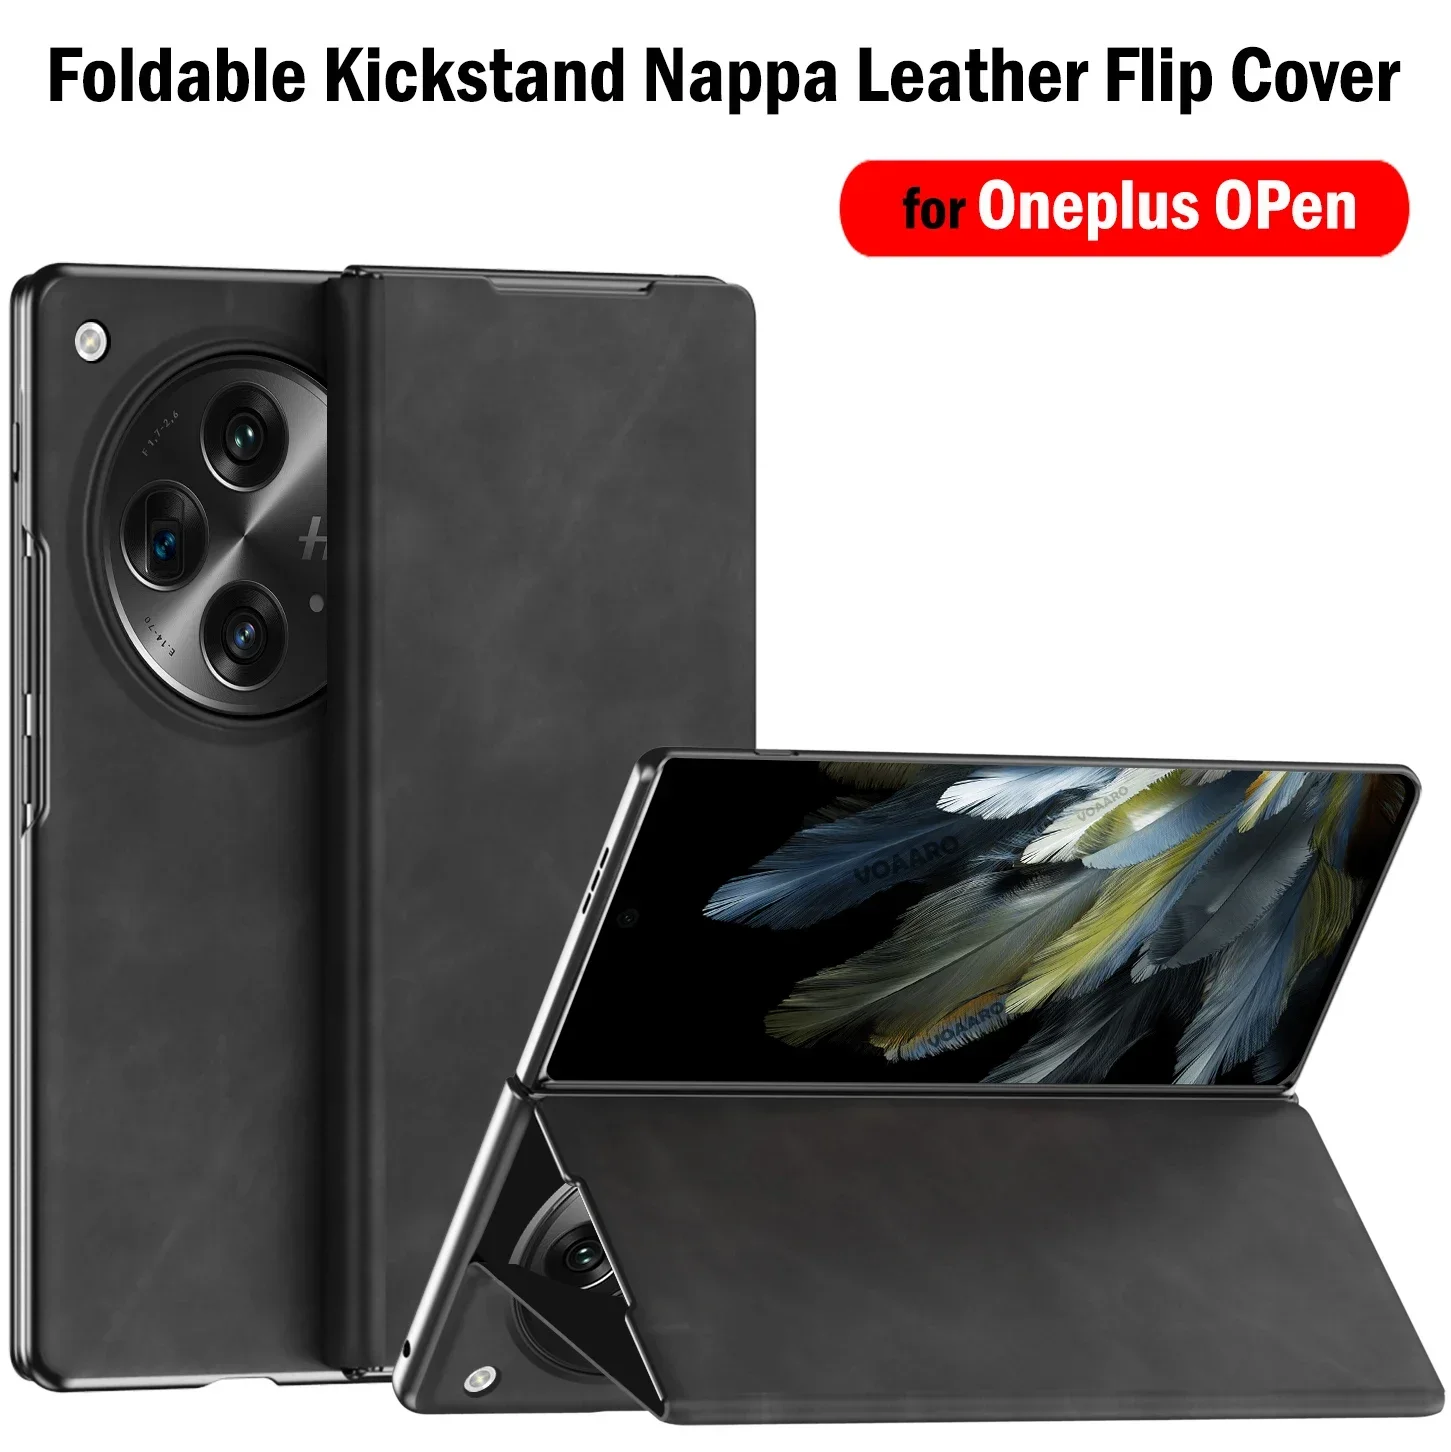 

Кожаный флип-чехол Nappa для Oneplus, открытая фотография, складная подставка, Обложка для Oneplus, открытая фотомагнитная фотография